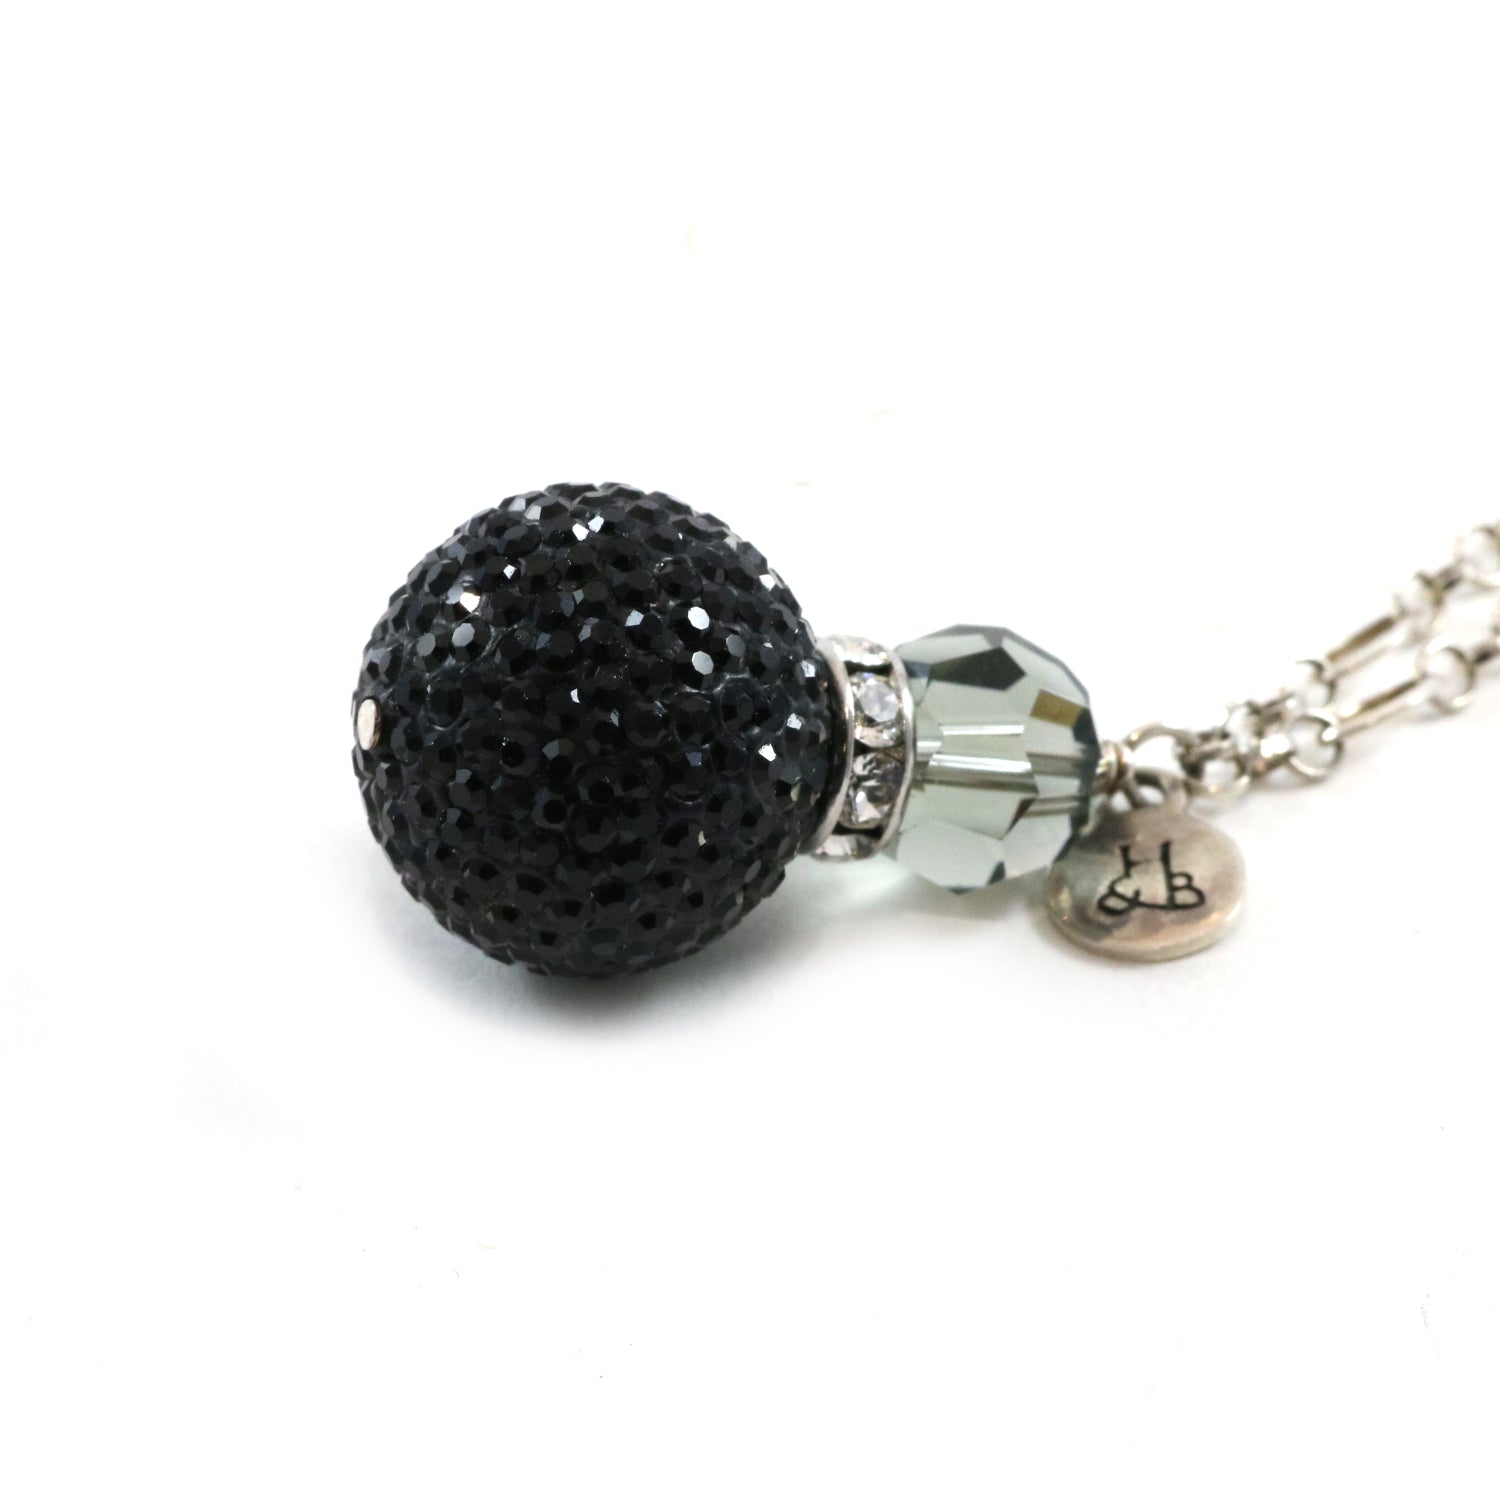 Large Black Sparkle Pendant Necklace